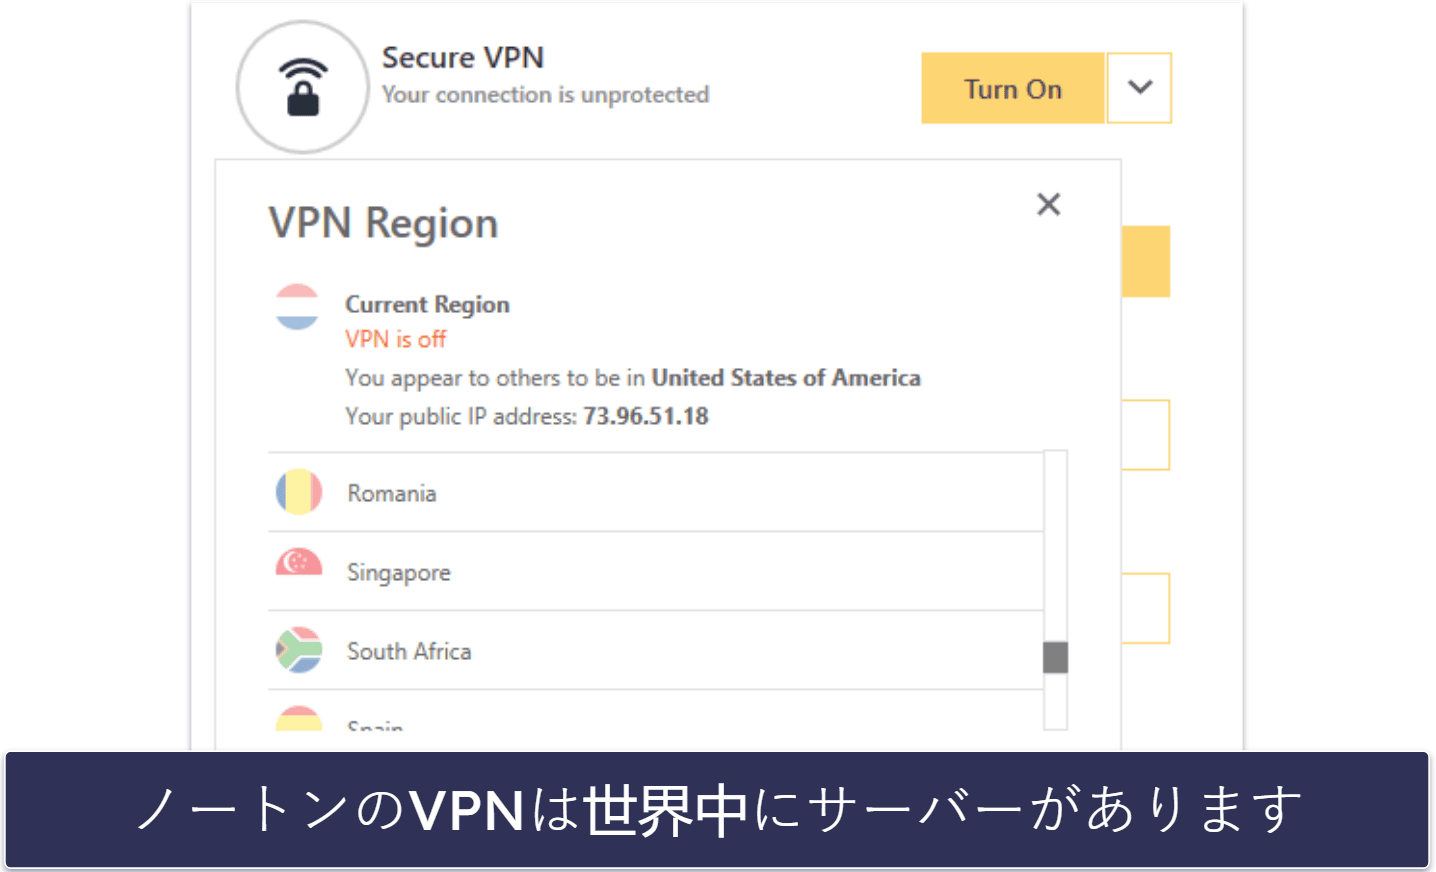 🥈2. ノートン：多機能VPNが使える最高峰のセキュリティソフト